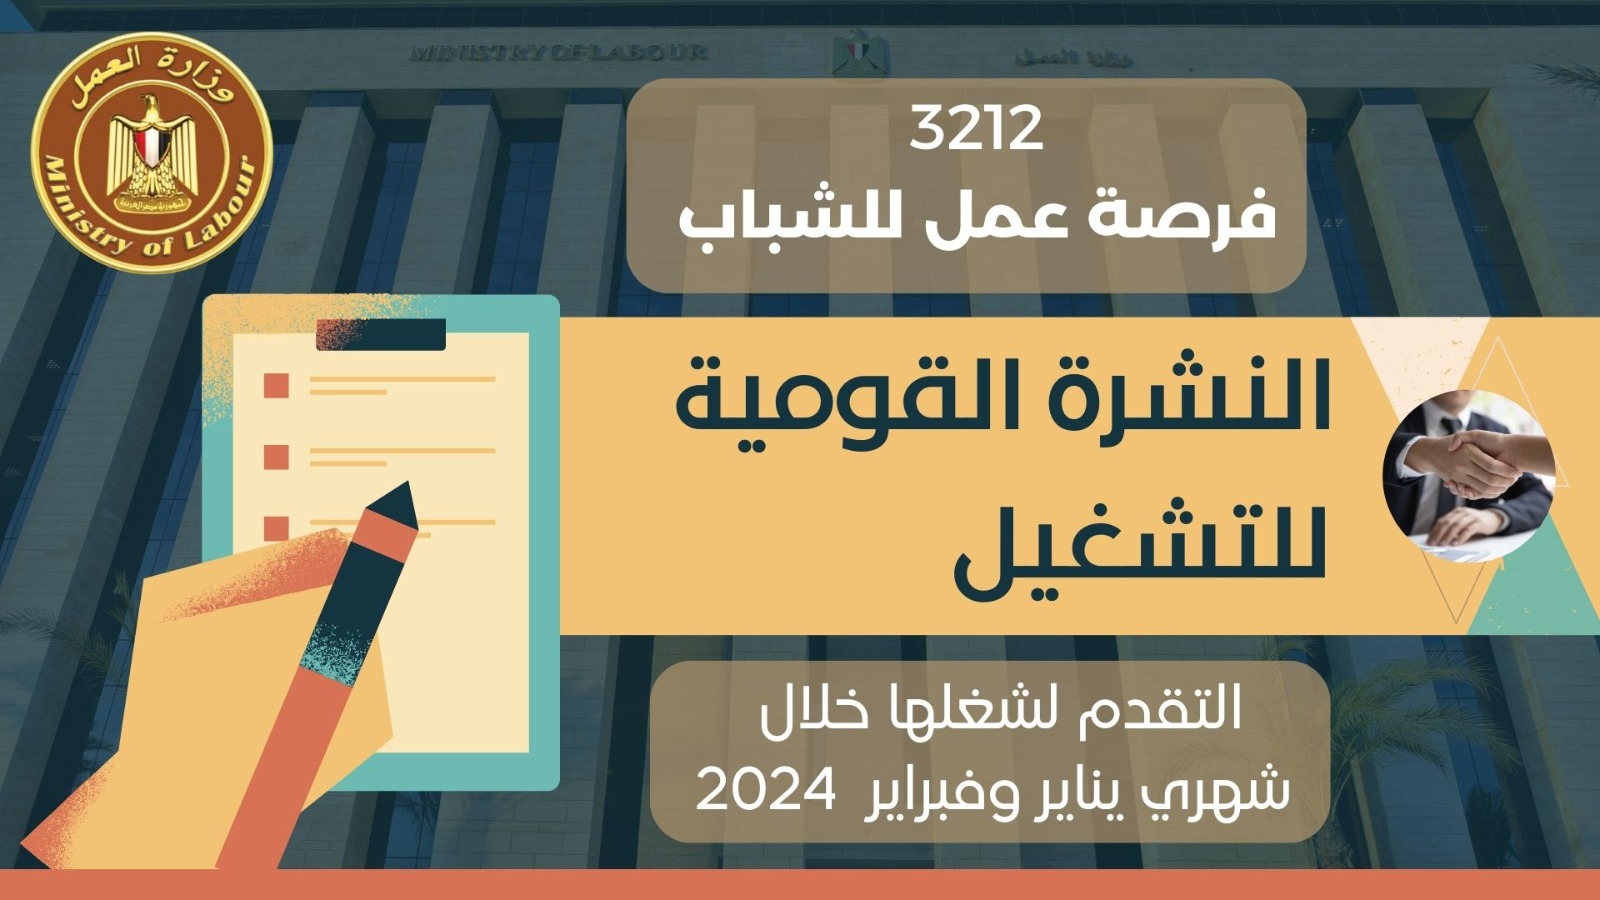 الدولة تواصل مواجهة البطالة .. وزارة العمل تُعلن عن 3212 فرصة عمل في 38 شركة خاصة بــ 9 محافظات 